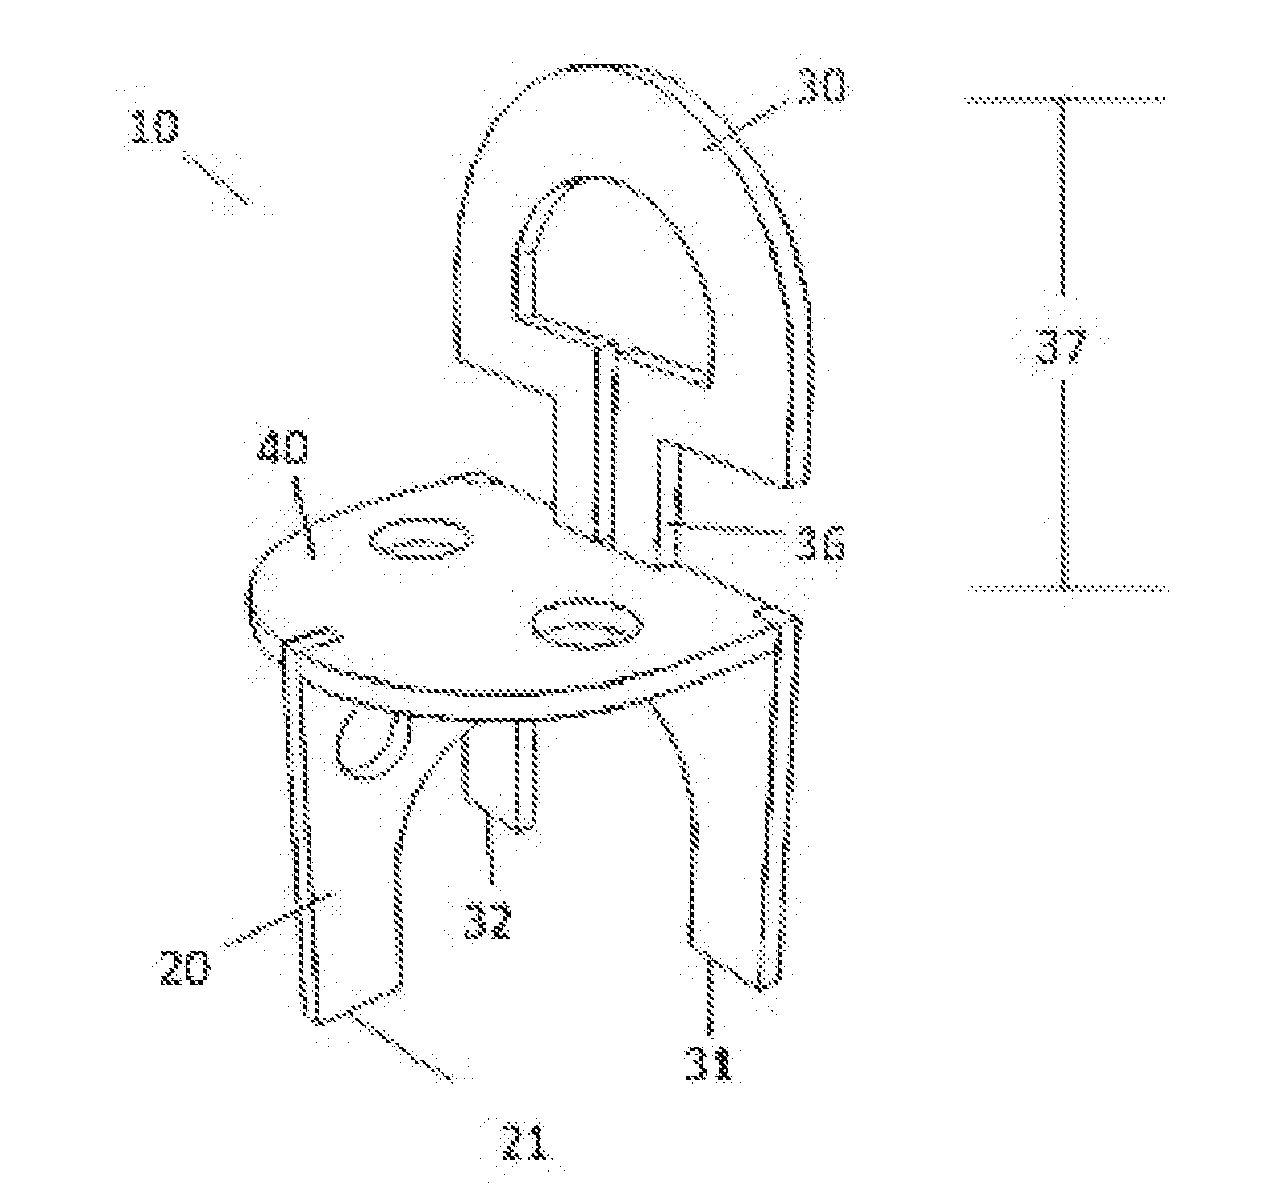 Modular interlocking furniture system